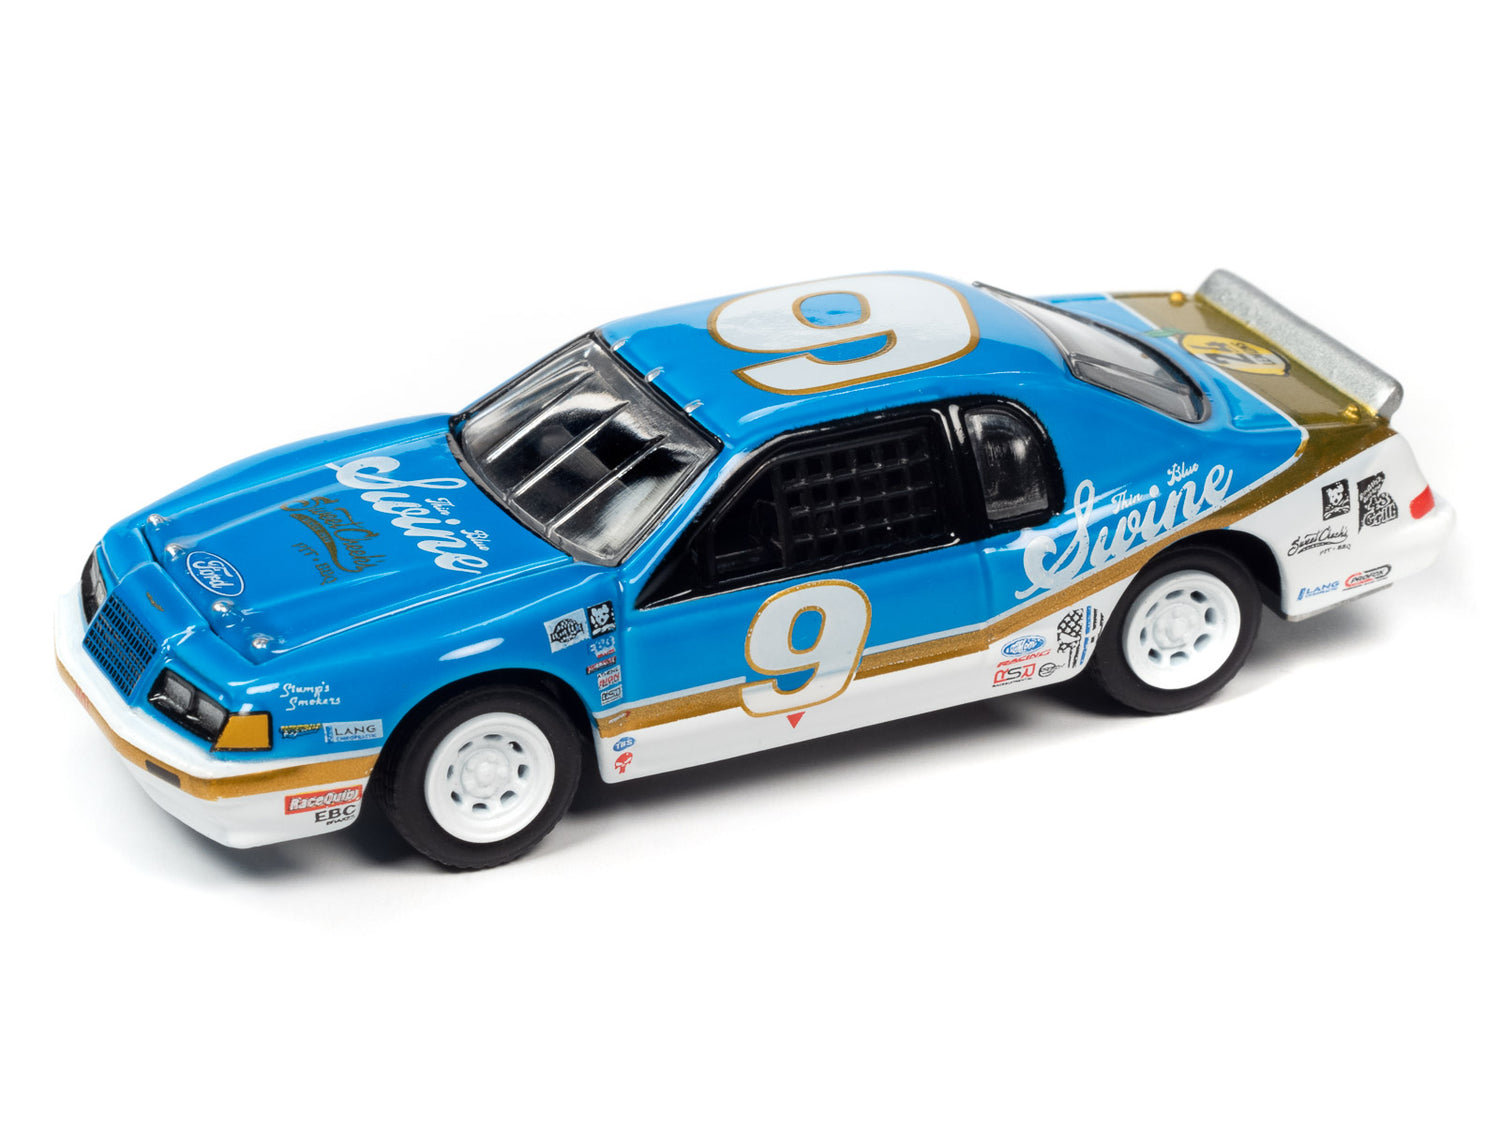 Johnny Lightning Street Freaks 1986 Ford Thunderbird Stock Car (24hrs of LeMons) (Bright Blue w/White & Gold Stripes) 1:64 Scale Diecast